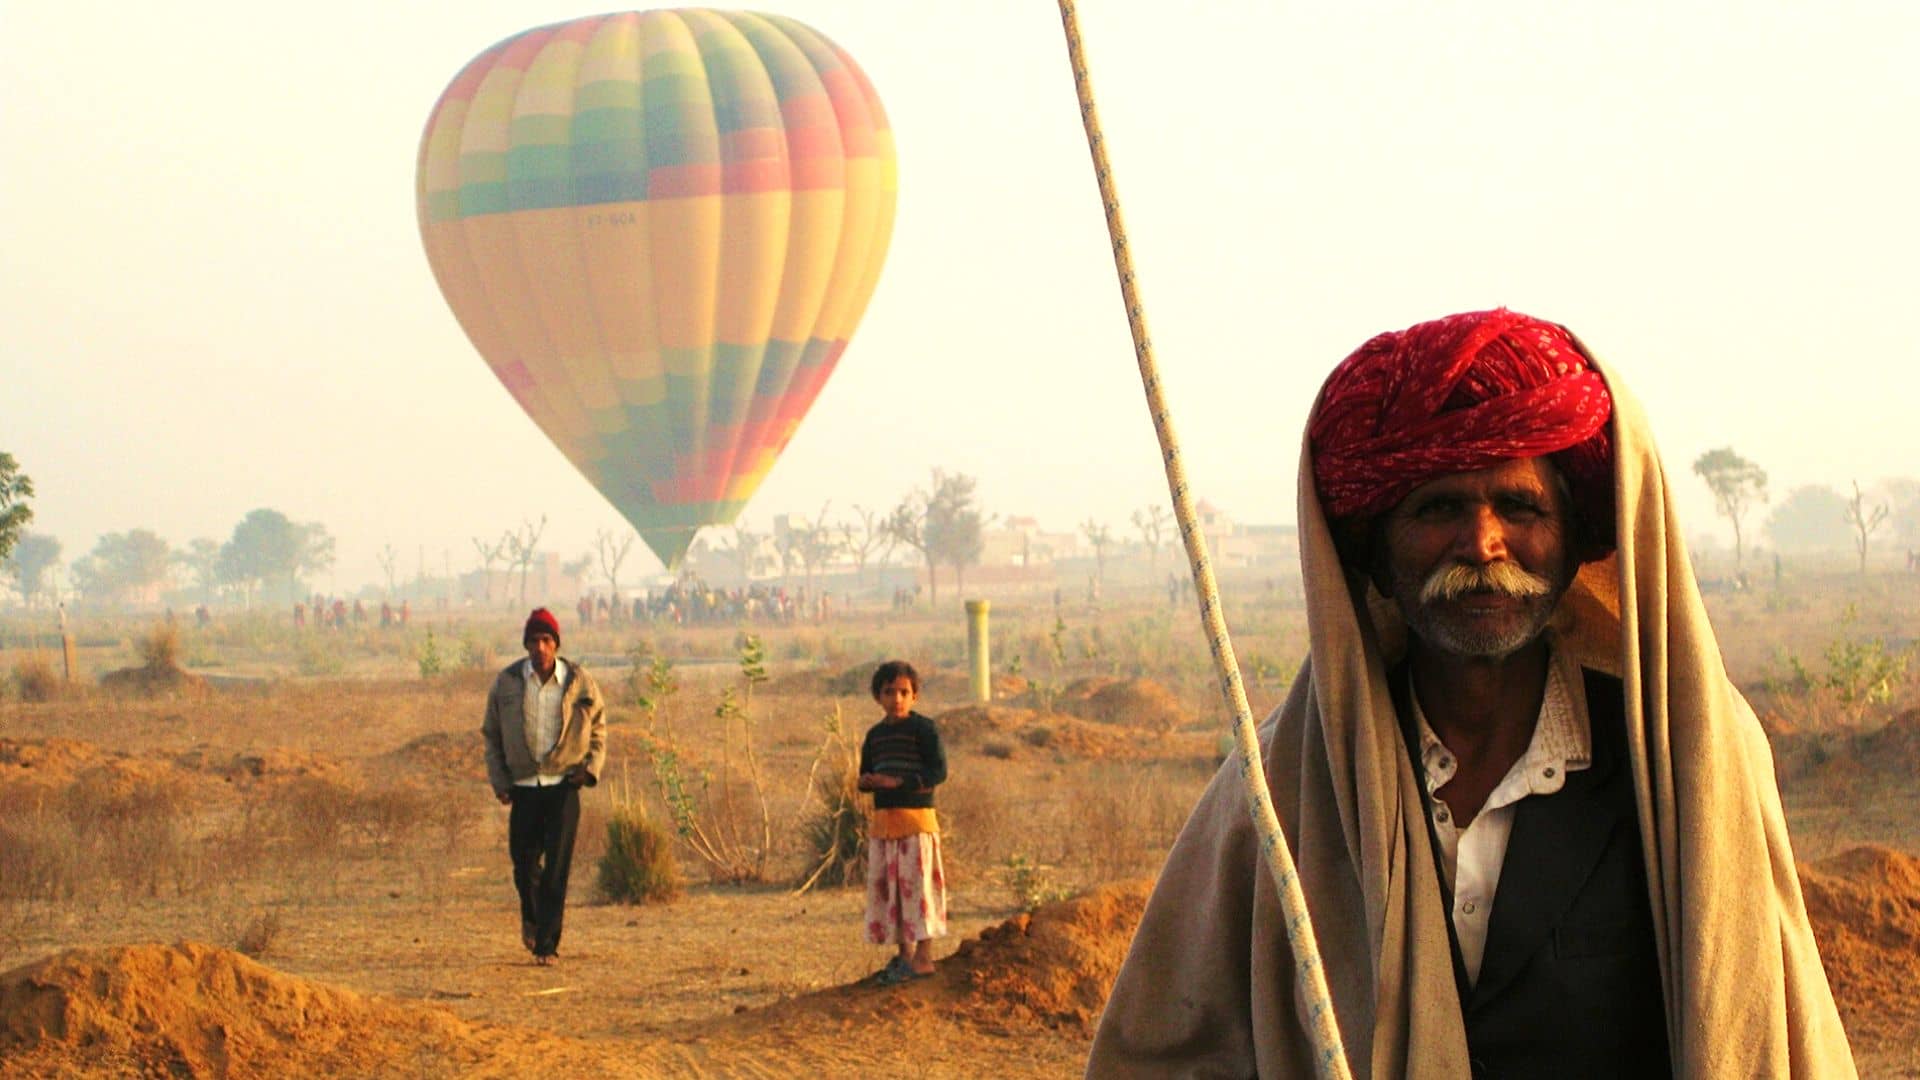 balloon safari in india